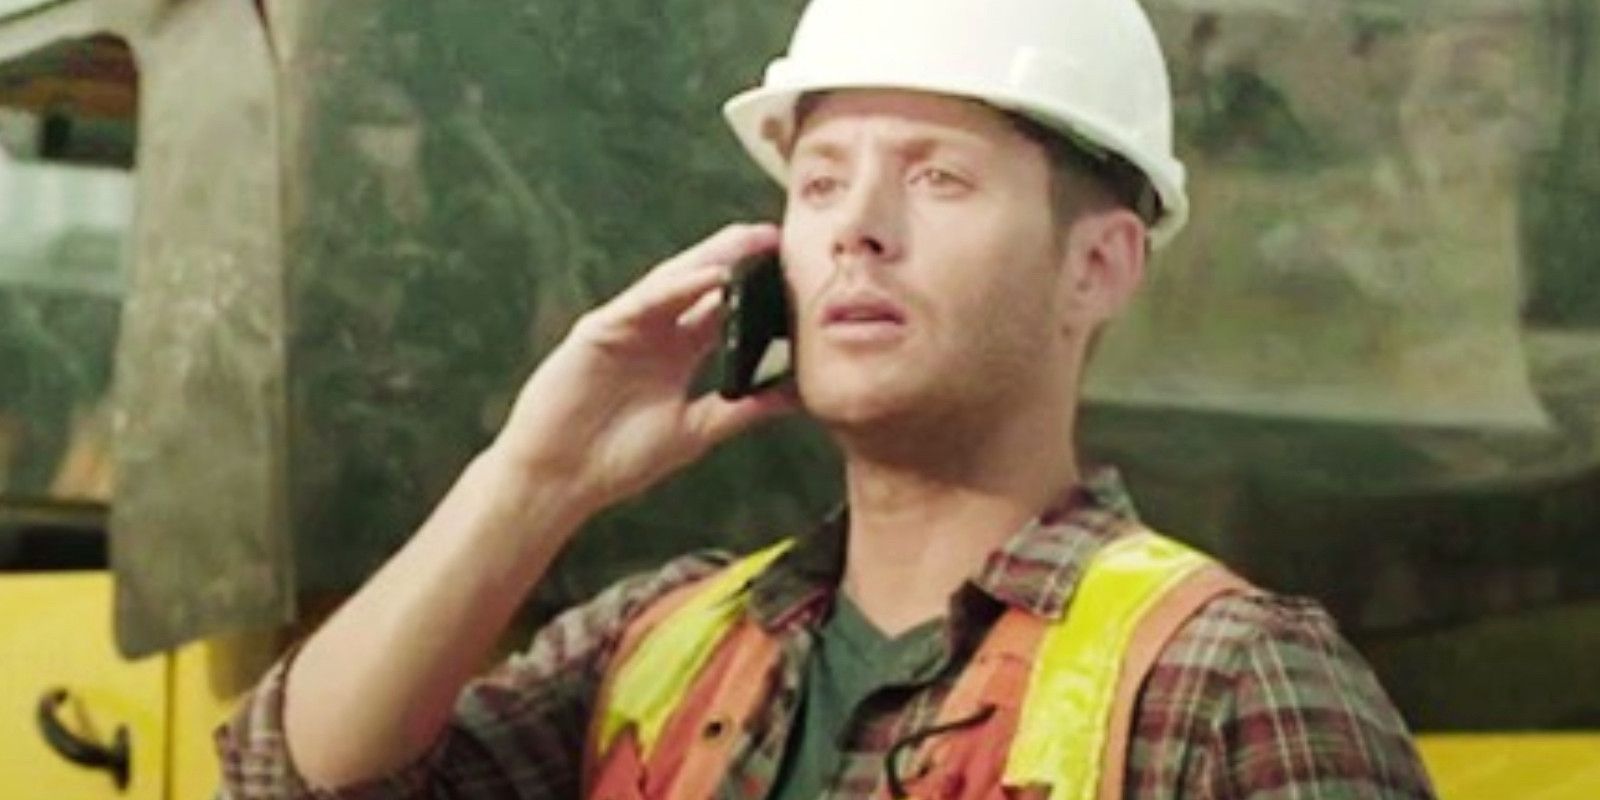 Jensen Ackles joga com amigos vestido como um trabalhador da construção civil e segurando um telefone no ouvido